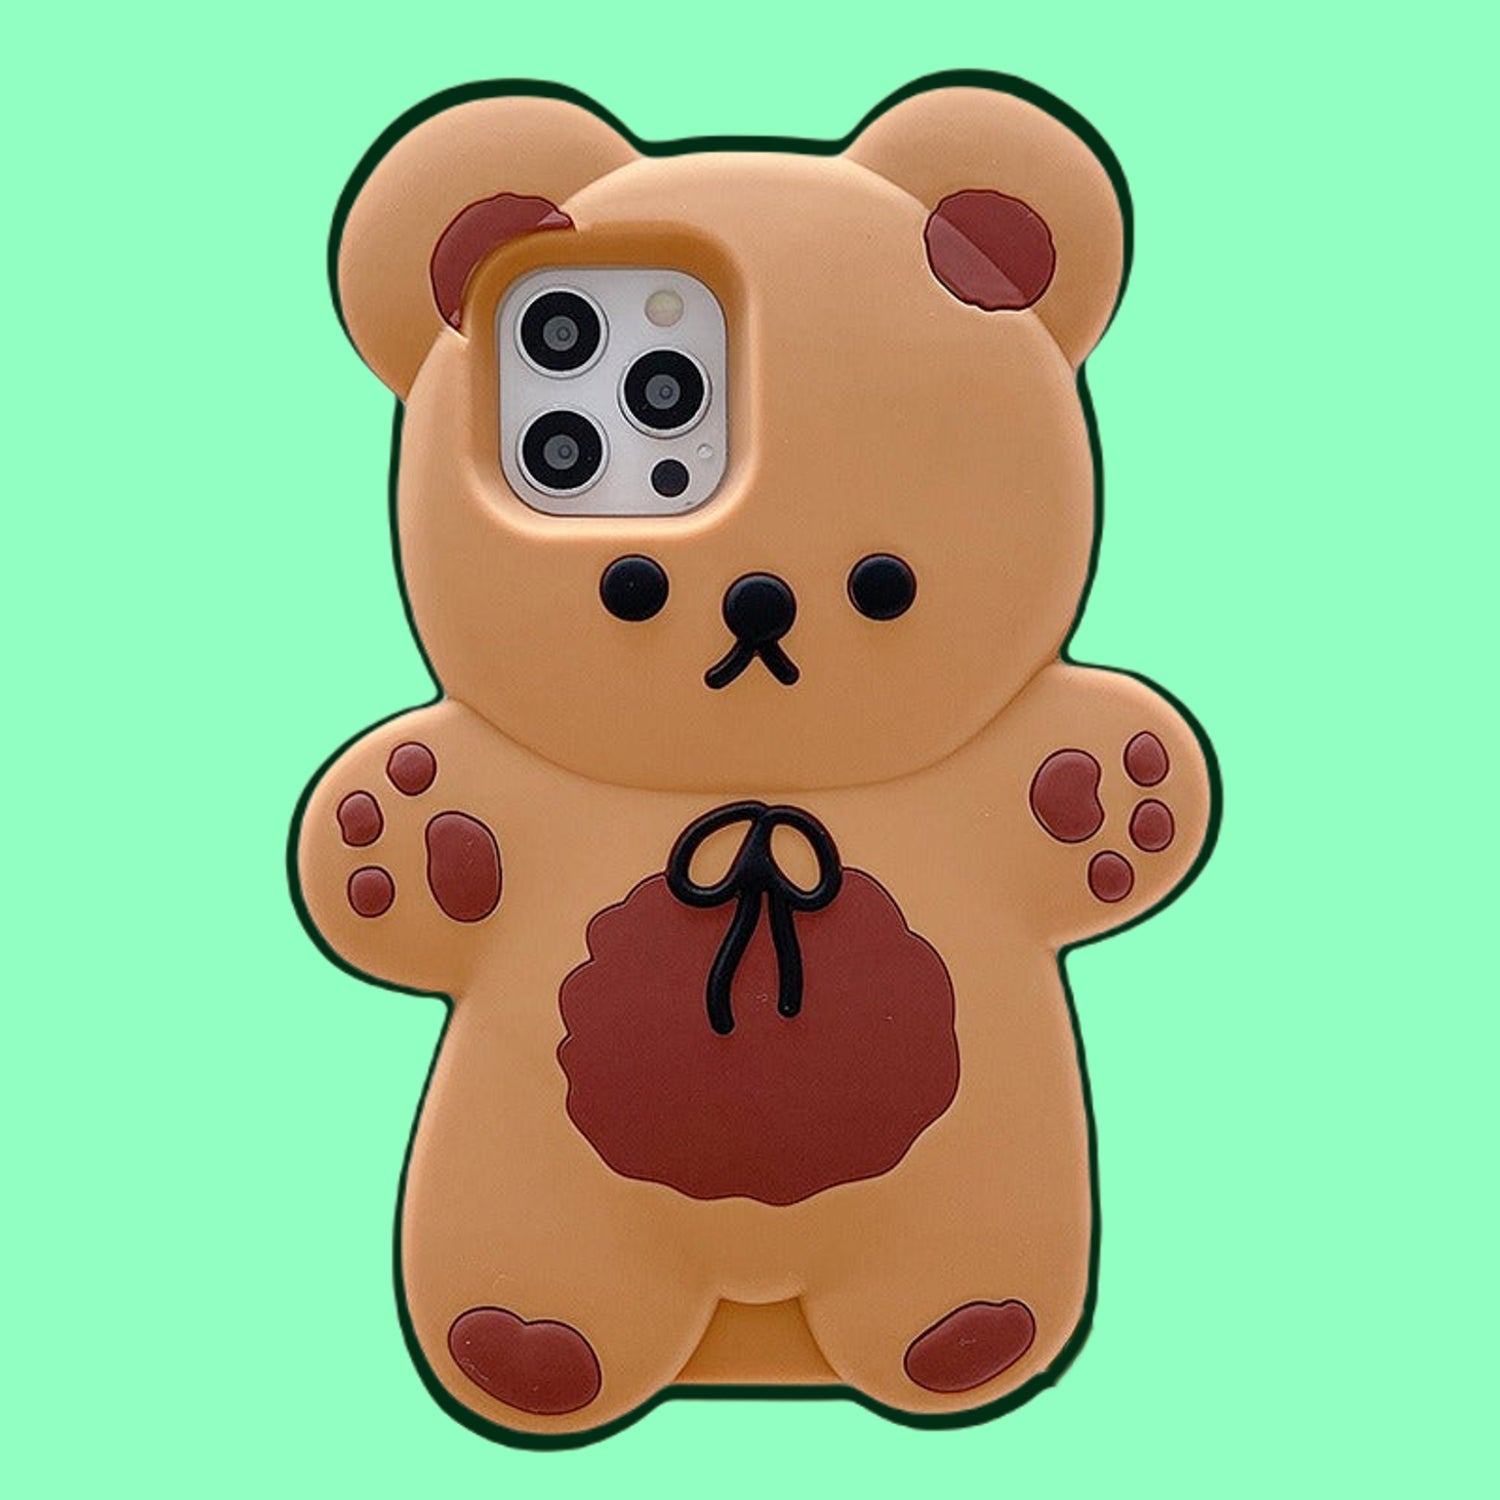 Kawaii Teddy Bear Phone Case for iPhone